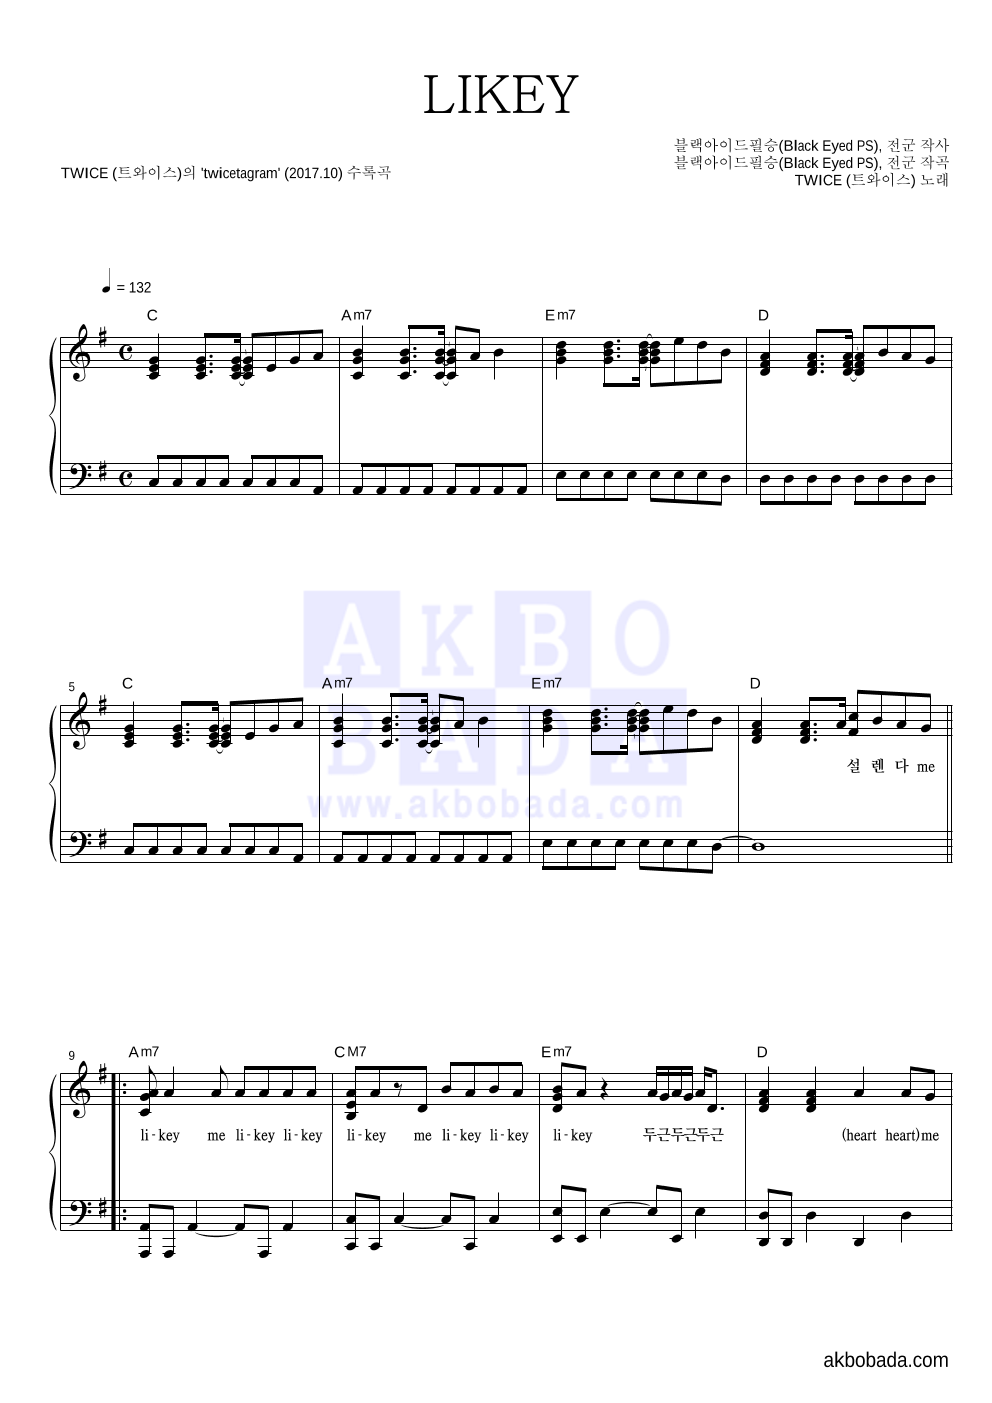 트와이스 - LIKEY 피아노 2단 악보 